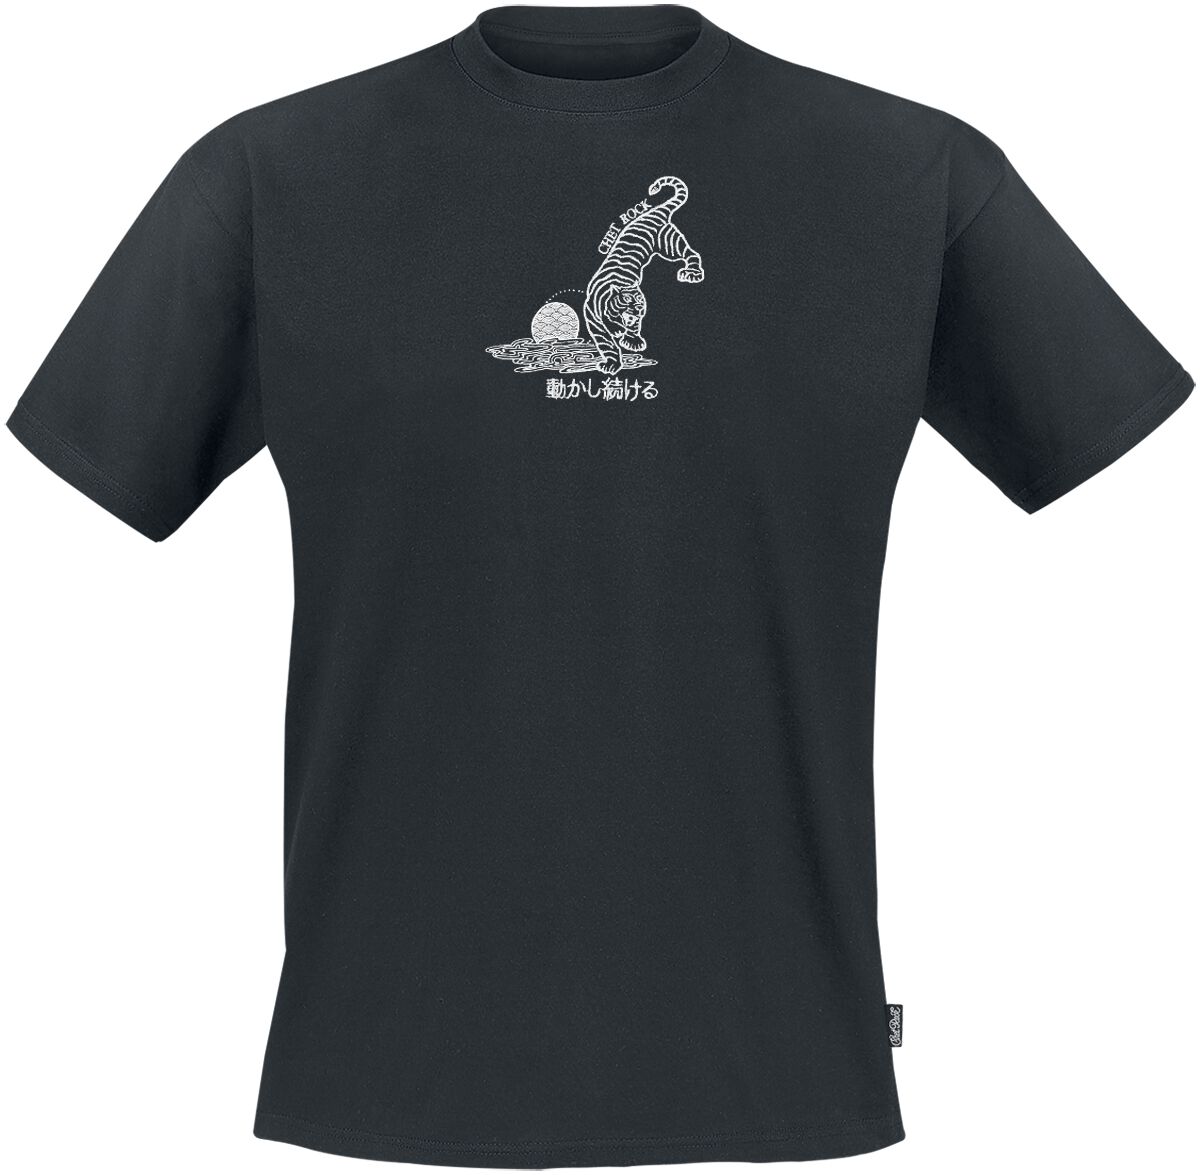 Chet Rock T-Shirt - Crouching Tiger - S bis XXL - für Männer - Größe XL - schwarz